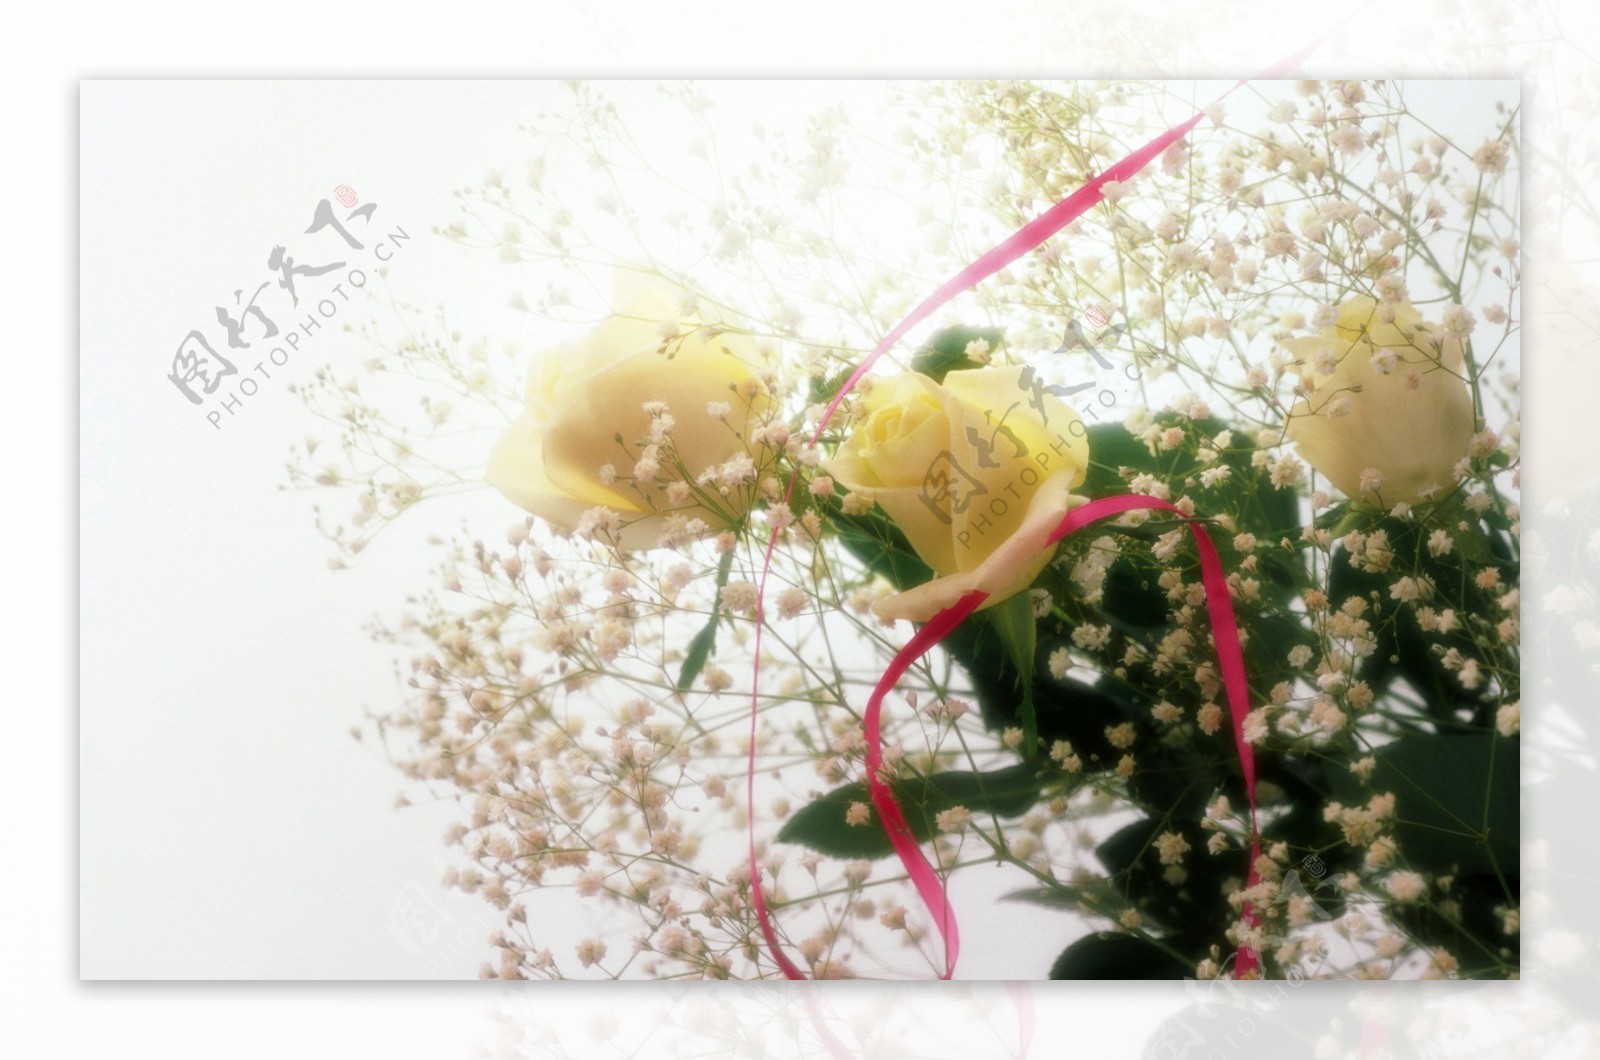 婚庆鲜花物品图片